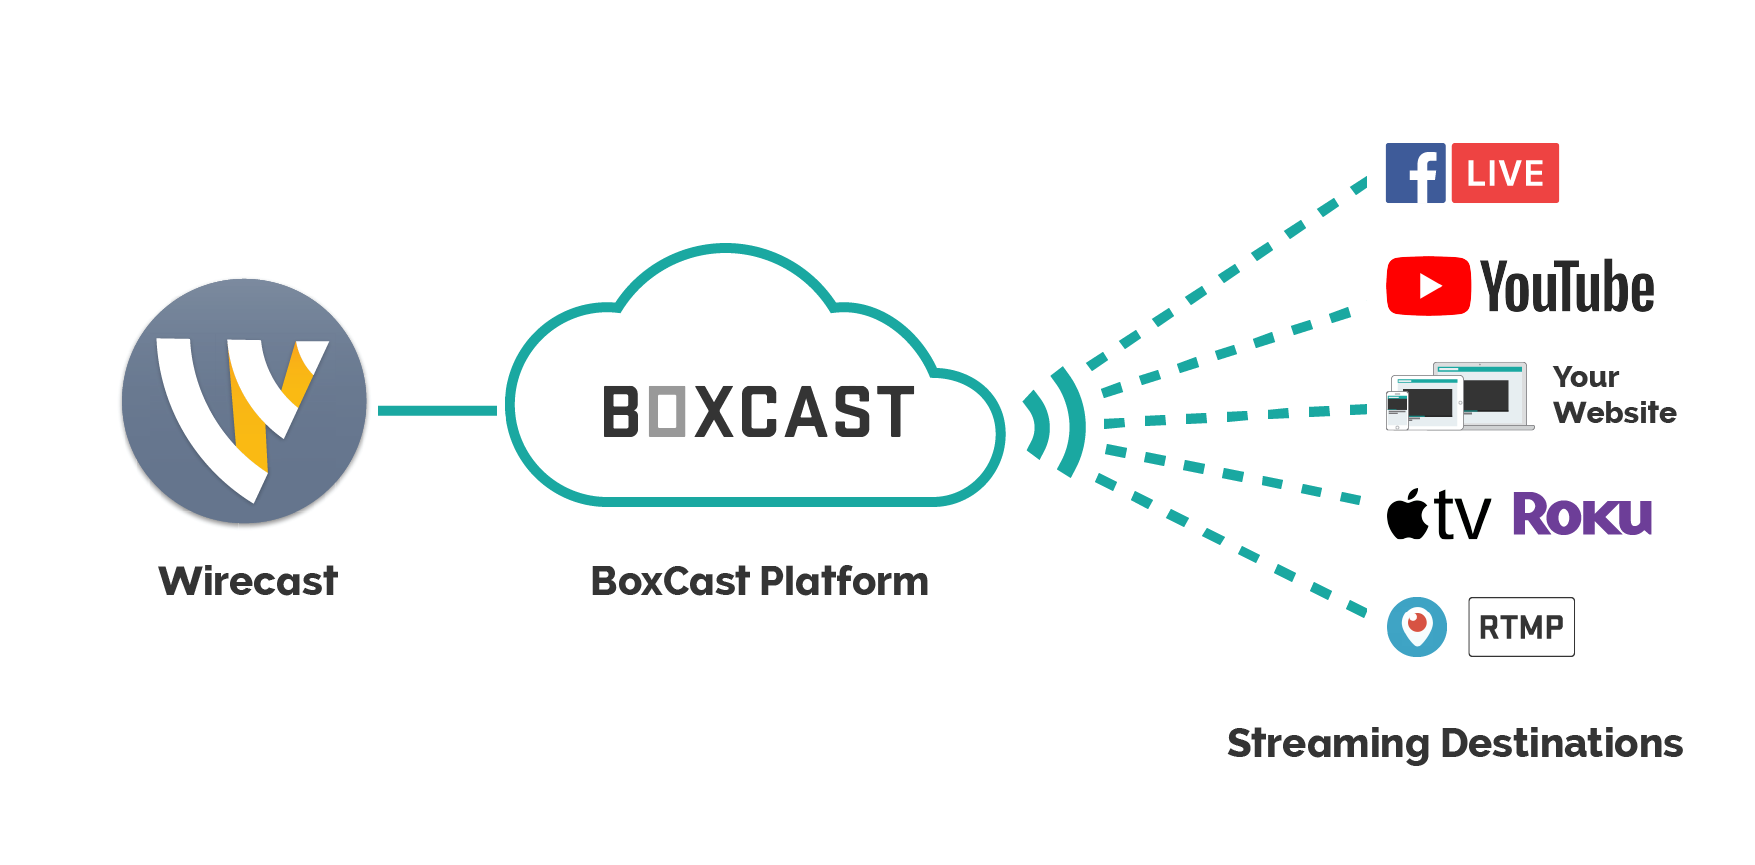 BoxCast_Wirecast_Workflow